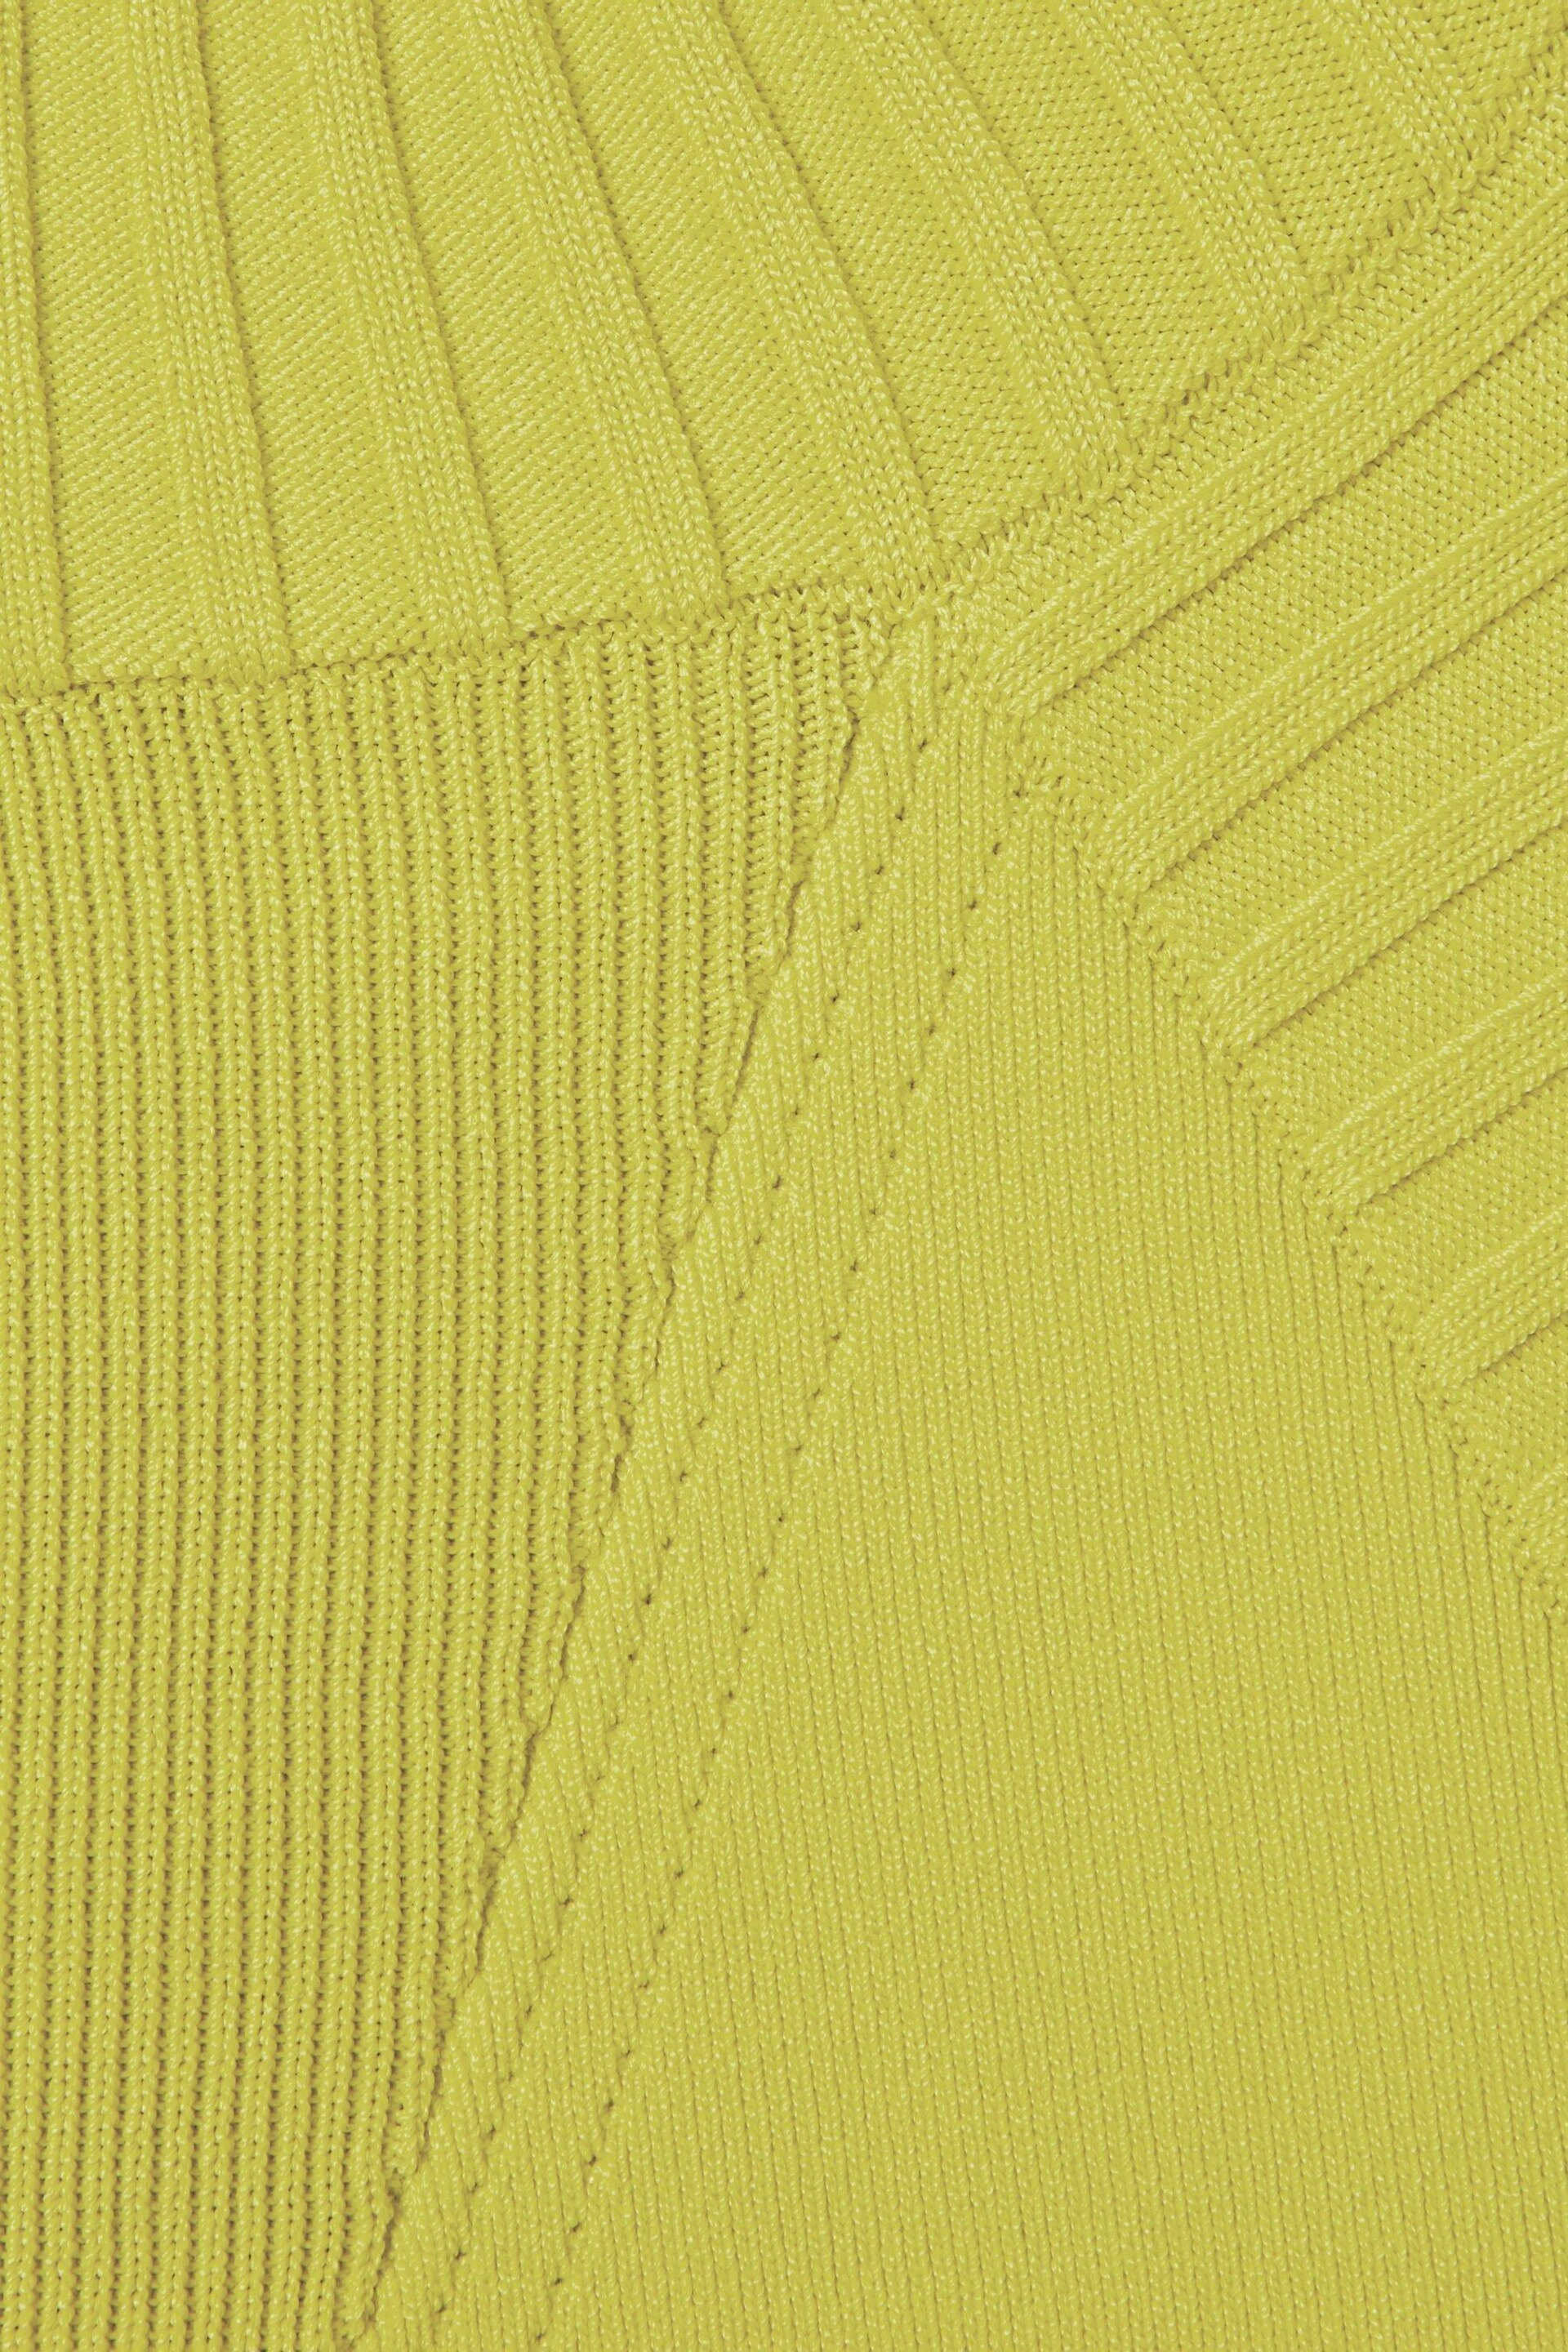 Florere Knitted Halter Neck Vest - Image 6 of 6